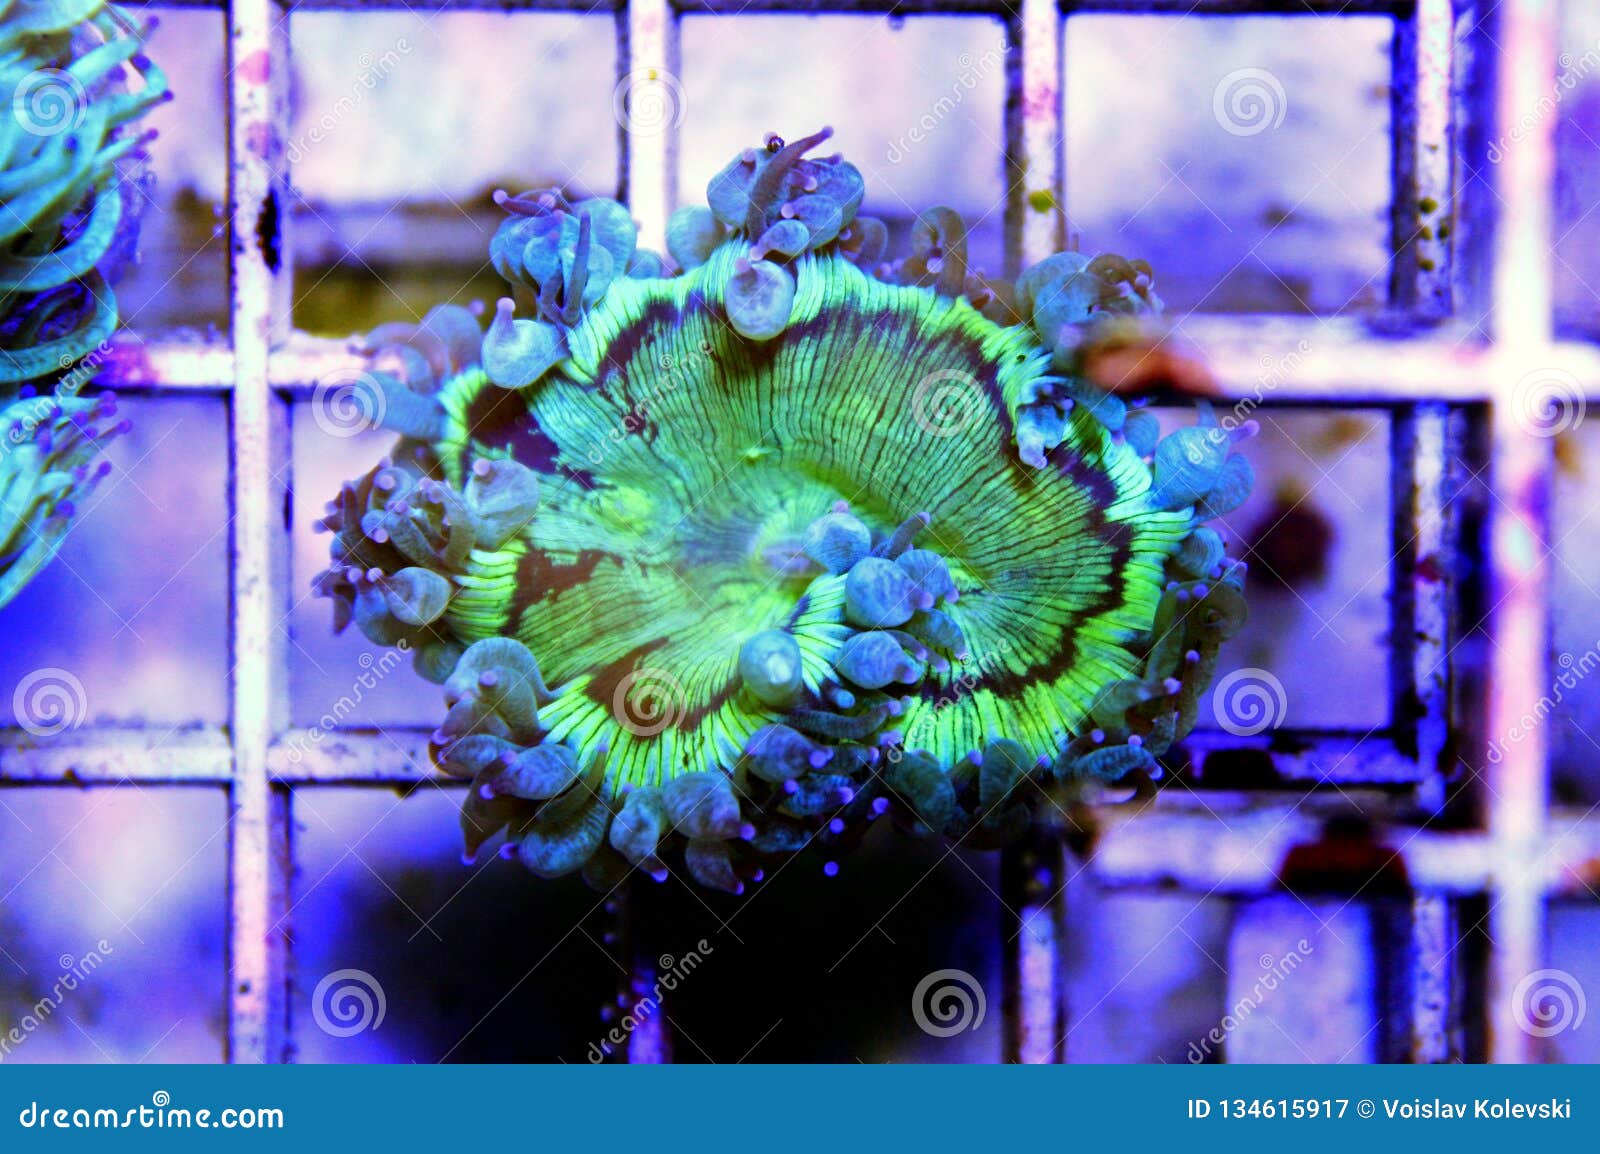 Elegance LPS Coral Isolated Image - Catalaphyllia Jardinei Stock Image ...